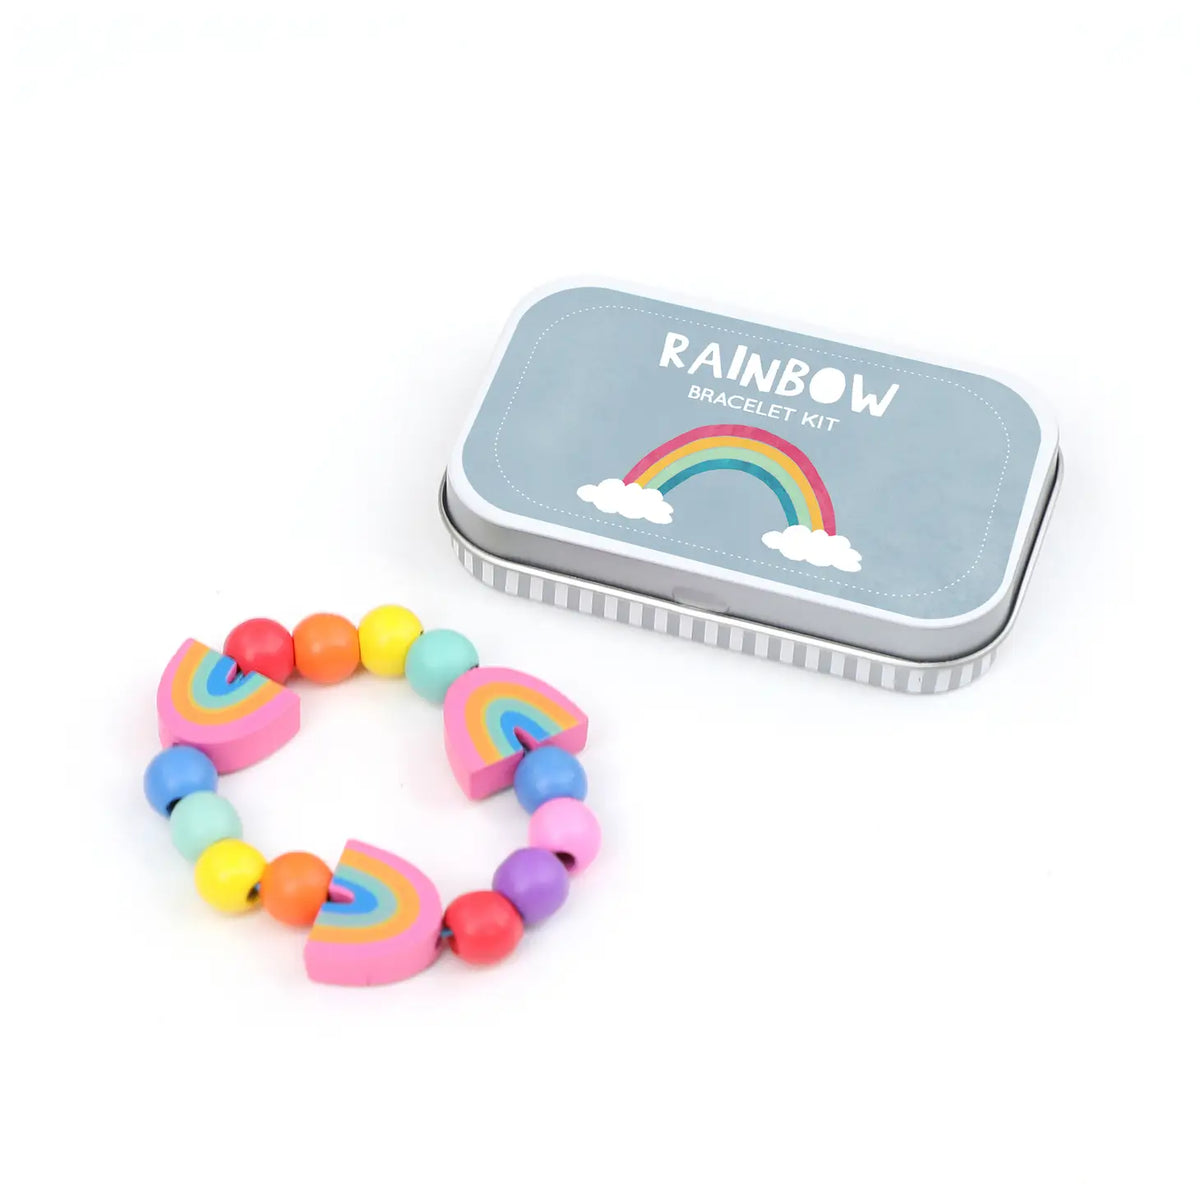 Make a Rainbow Bracelet